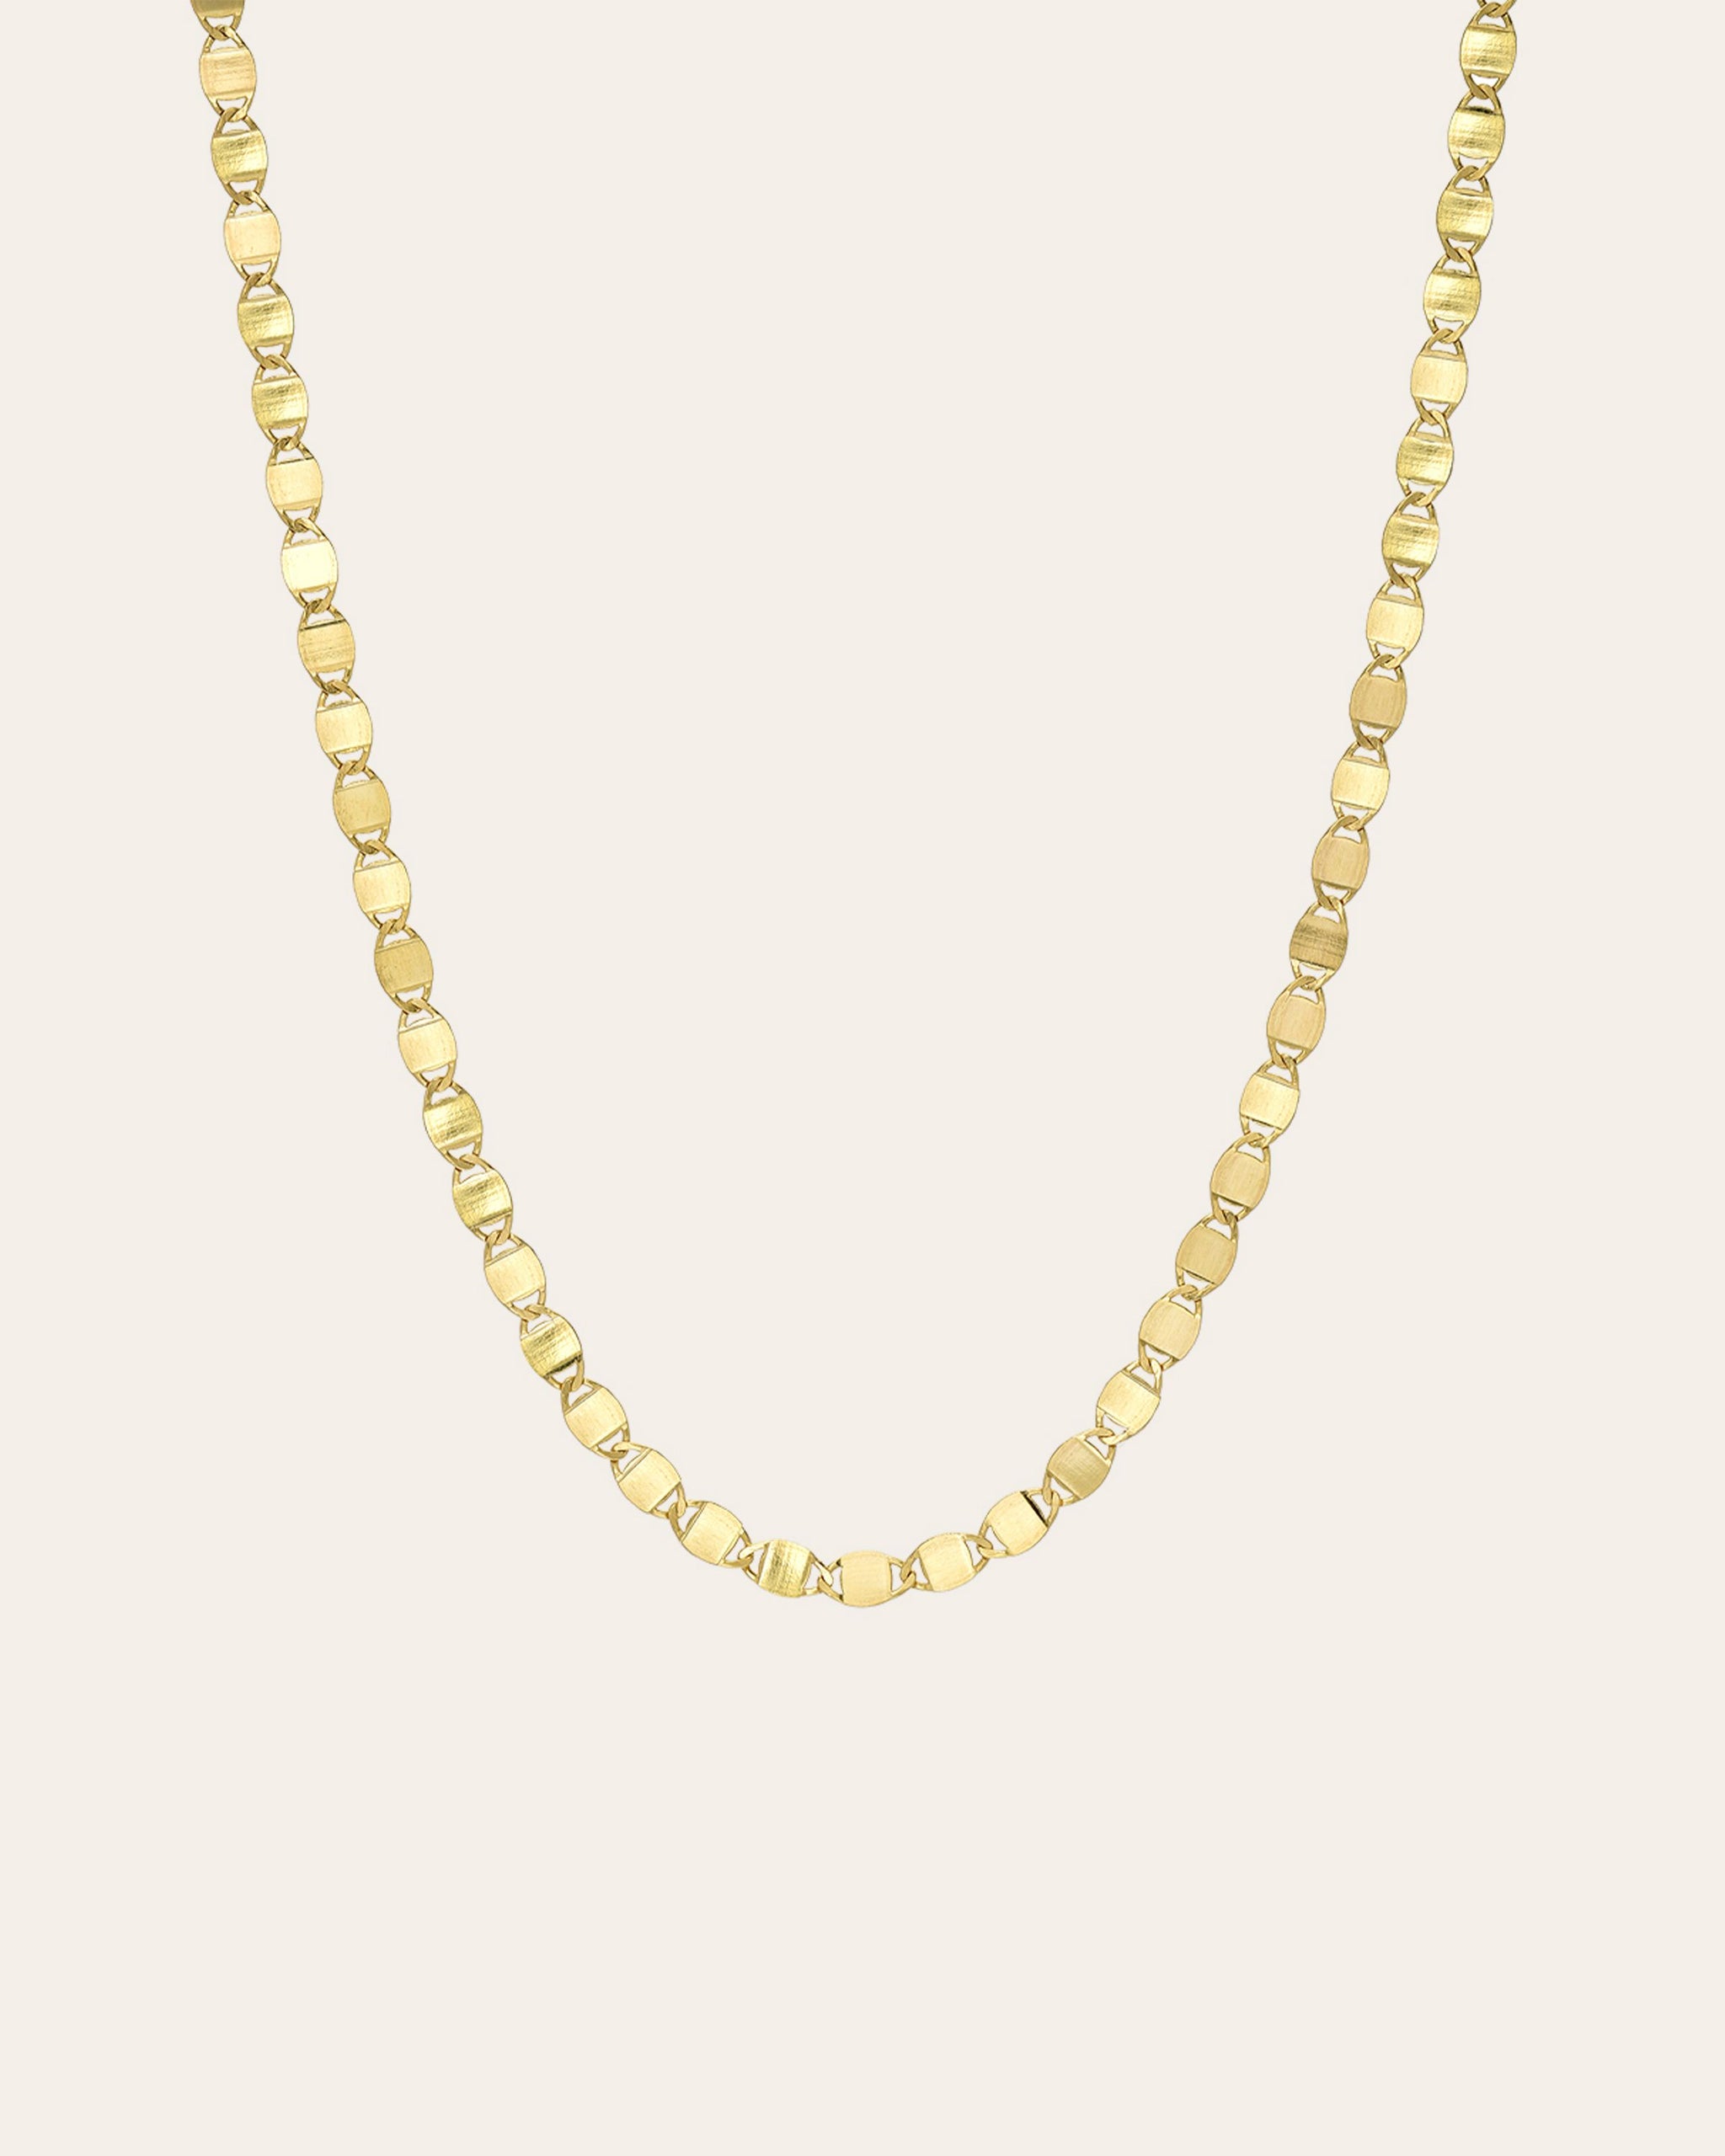 14ct Gold Louis Vuitton Chain - 10.44 Grams - Own4Less